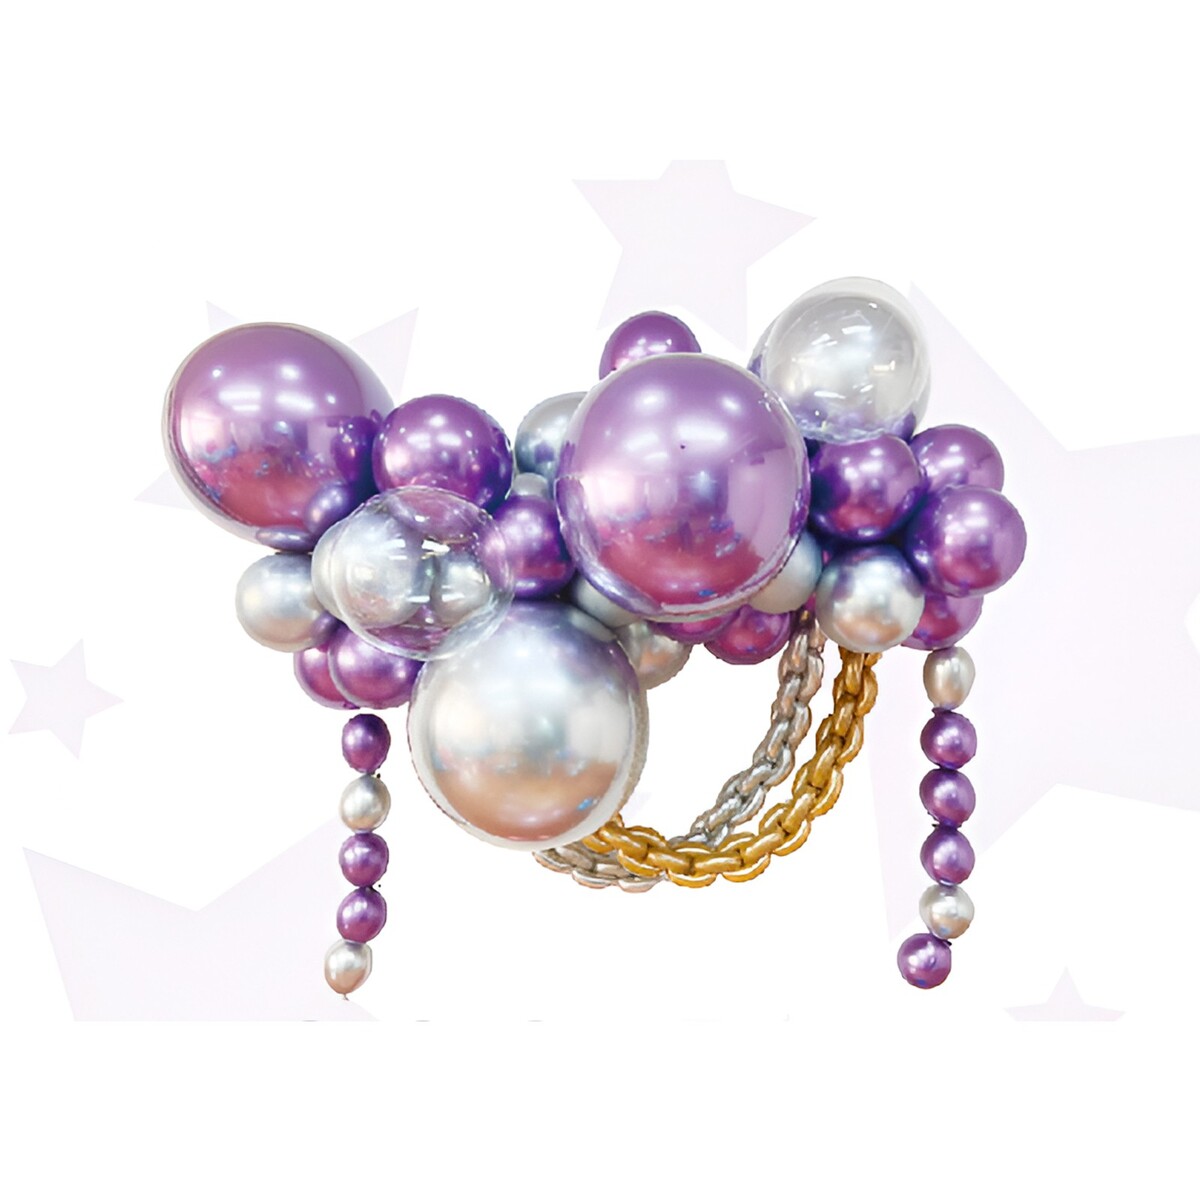 Набор для создания композиций из воздушных шаров, набор 52 шт., фиолетовый, серебро набор для создания украшений